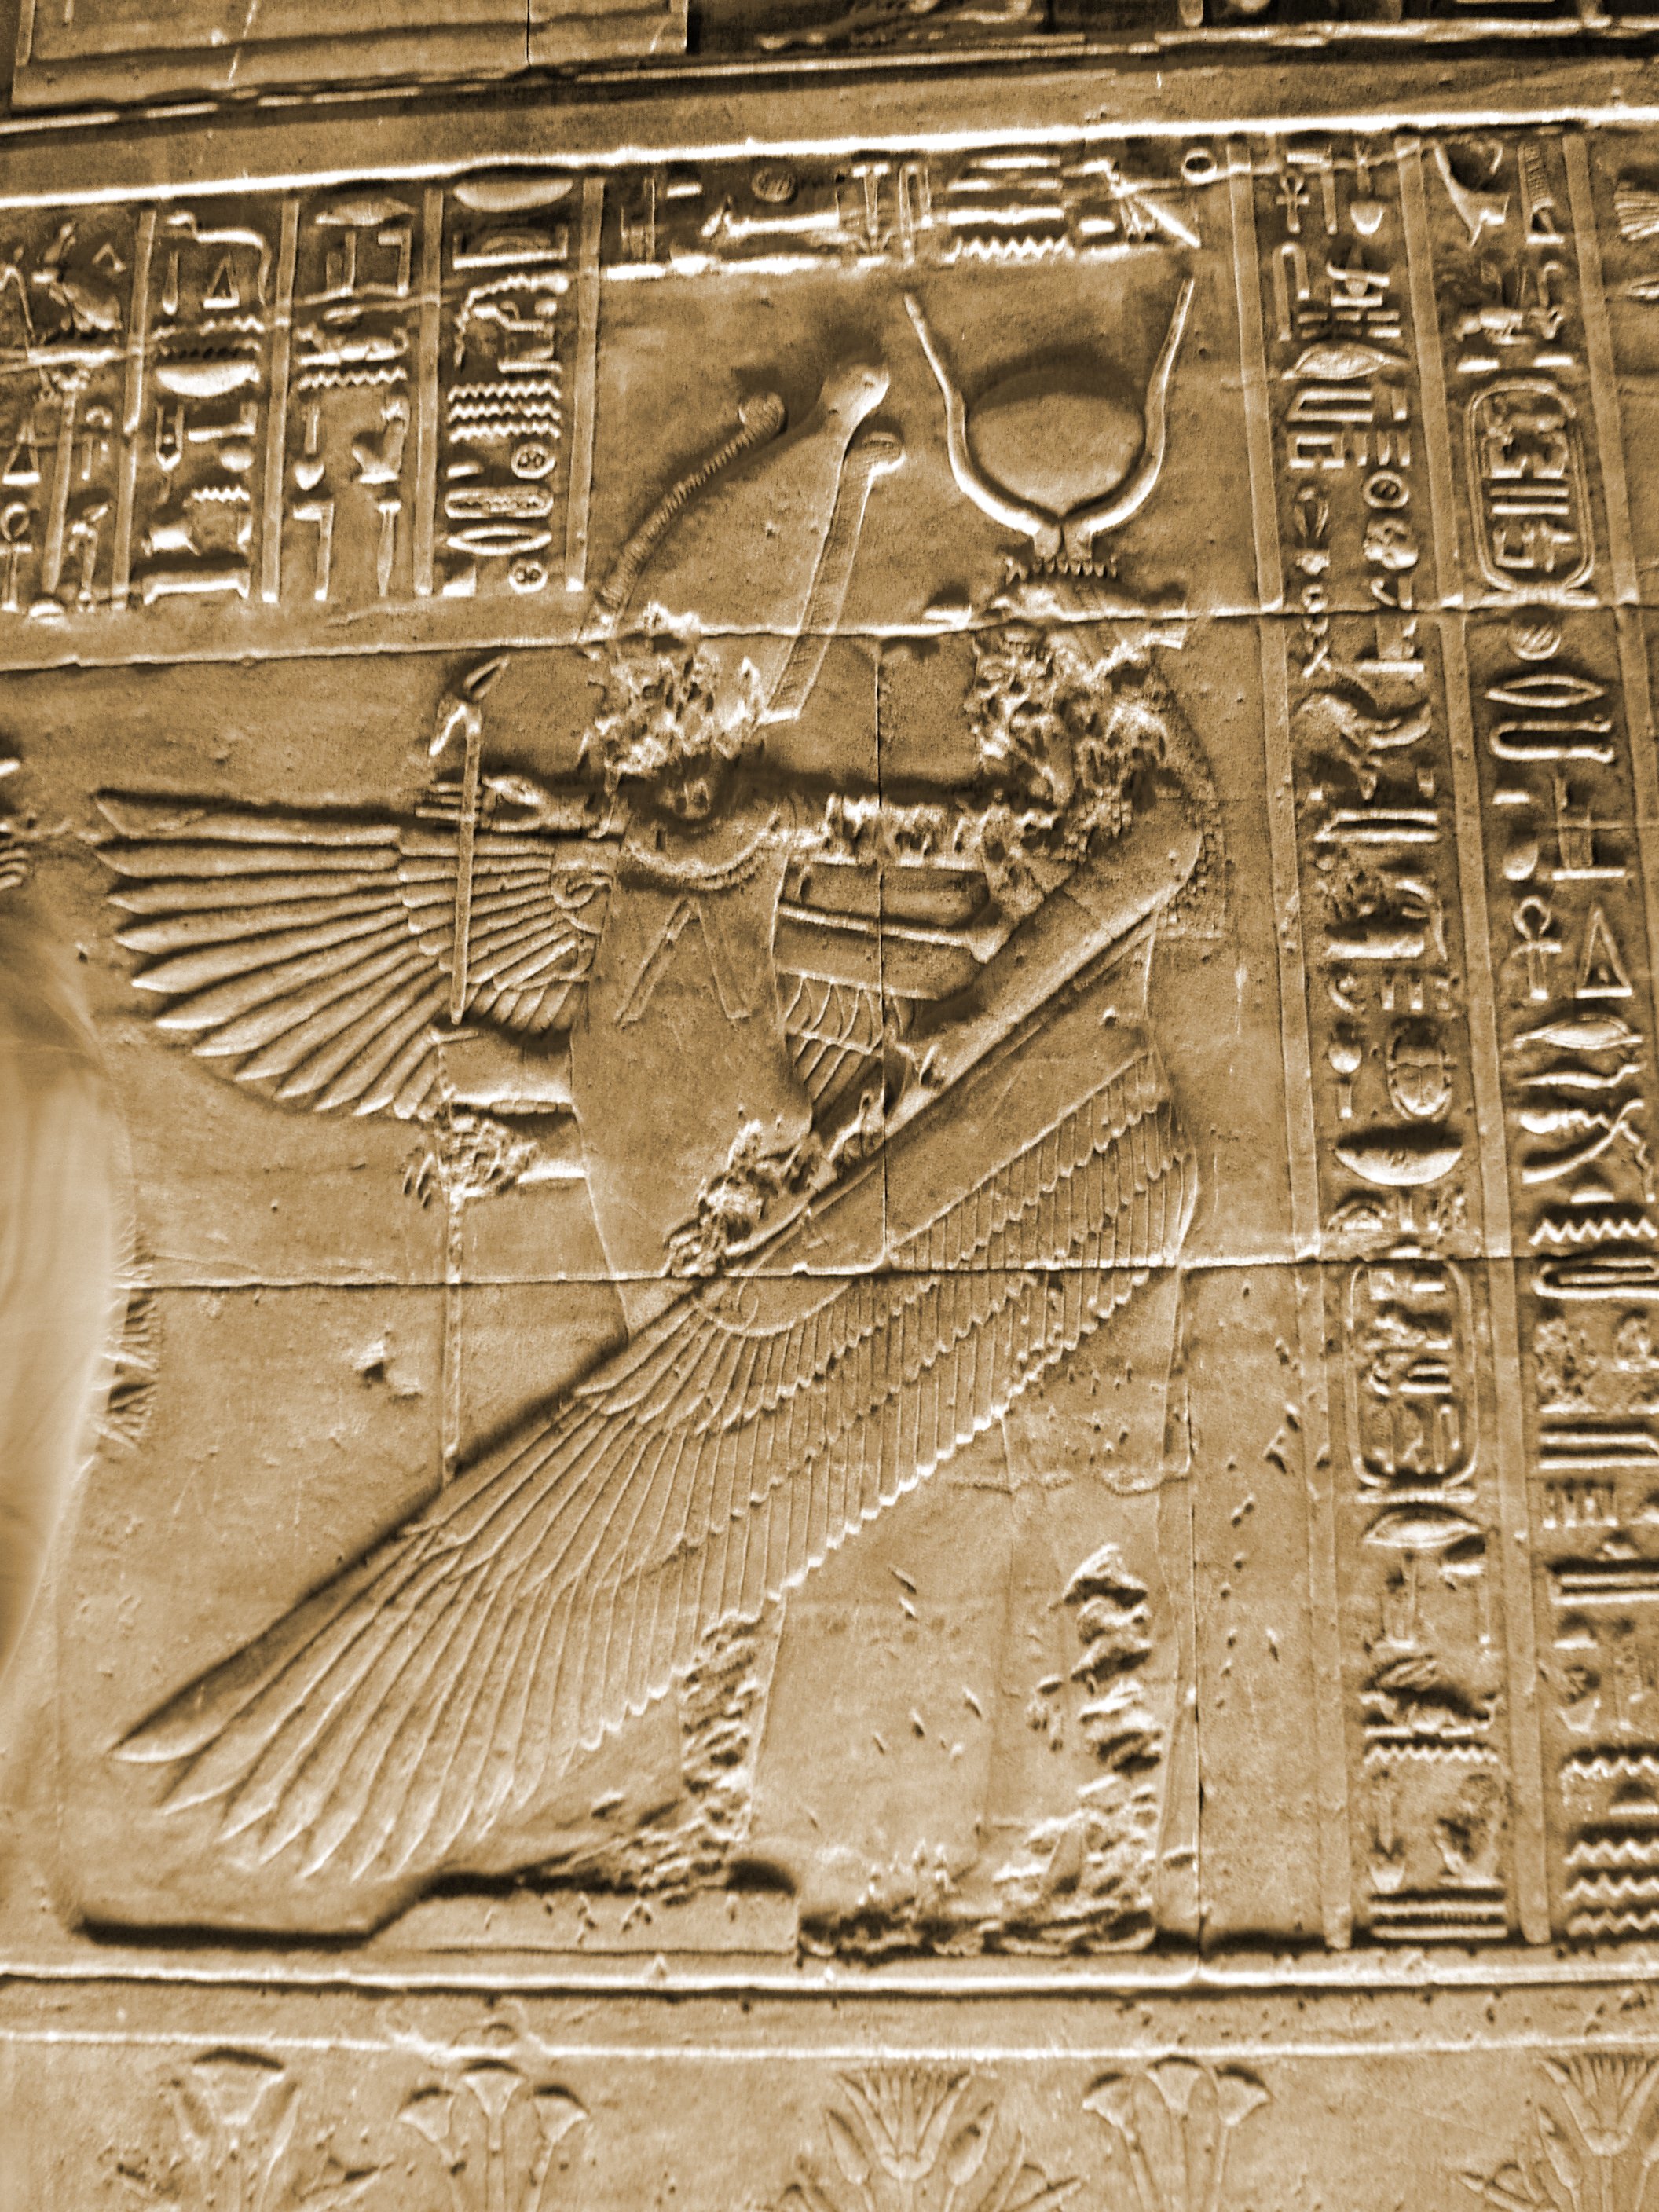 https://upload.wikimedia.org/wikipedia/commons/4/45/Philae_Temple_Egypt_Goddess_Isis_As_Angel_Mural_Artwork_2004-10-11.jpg